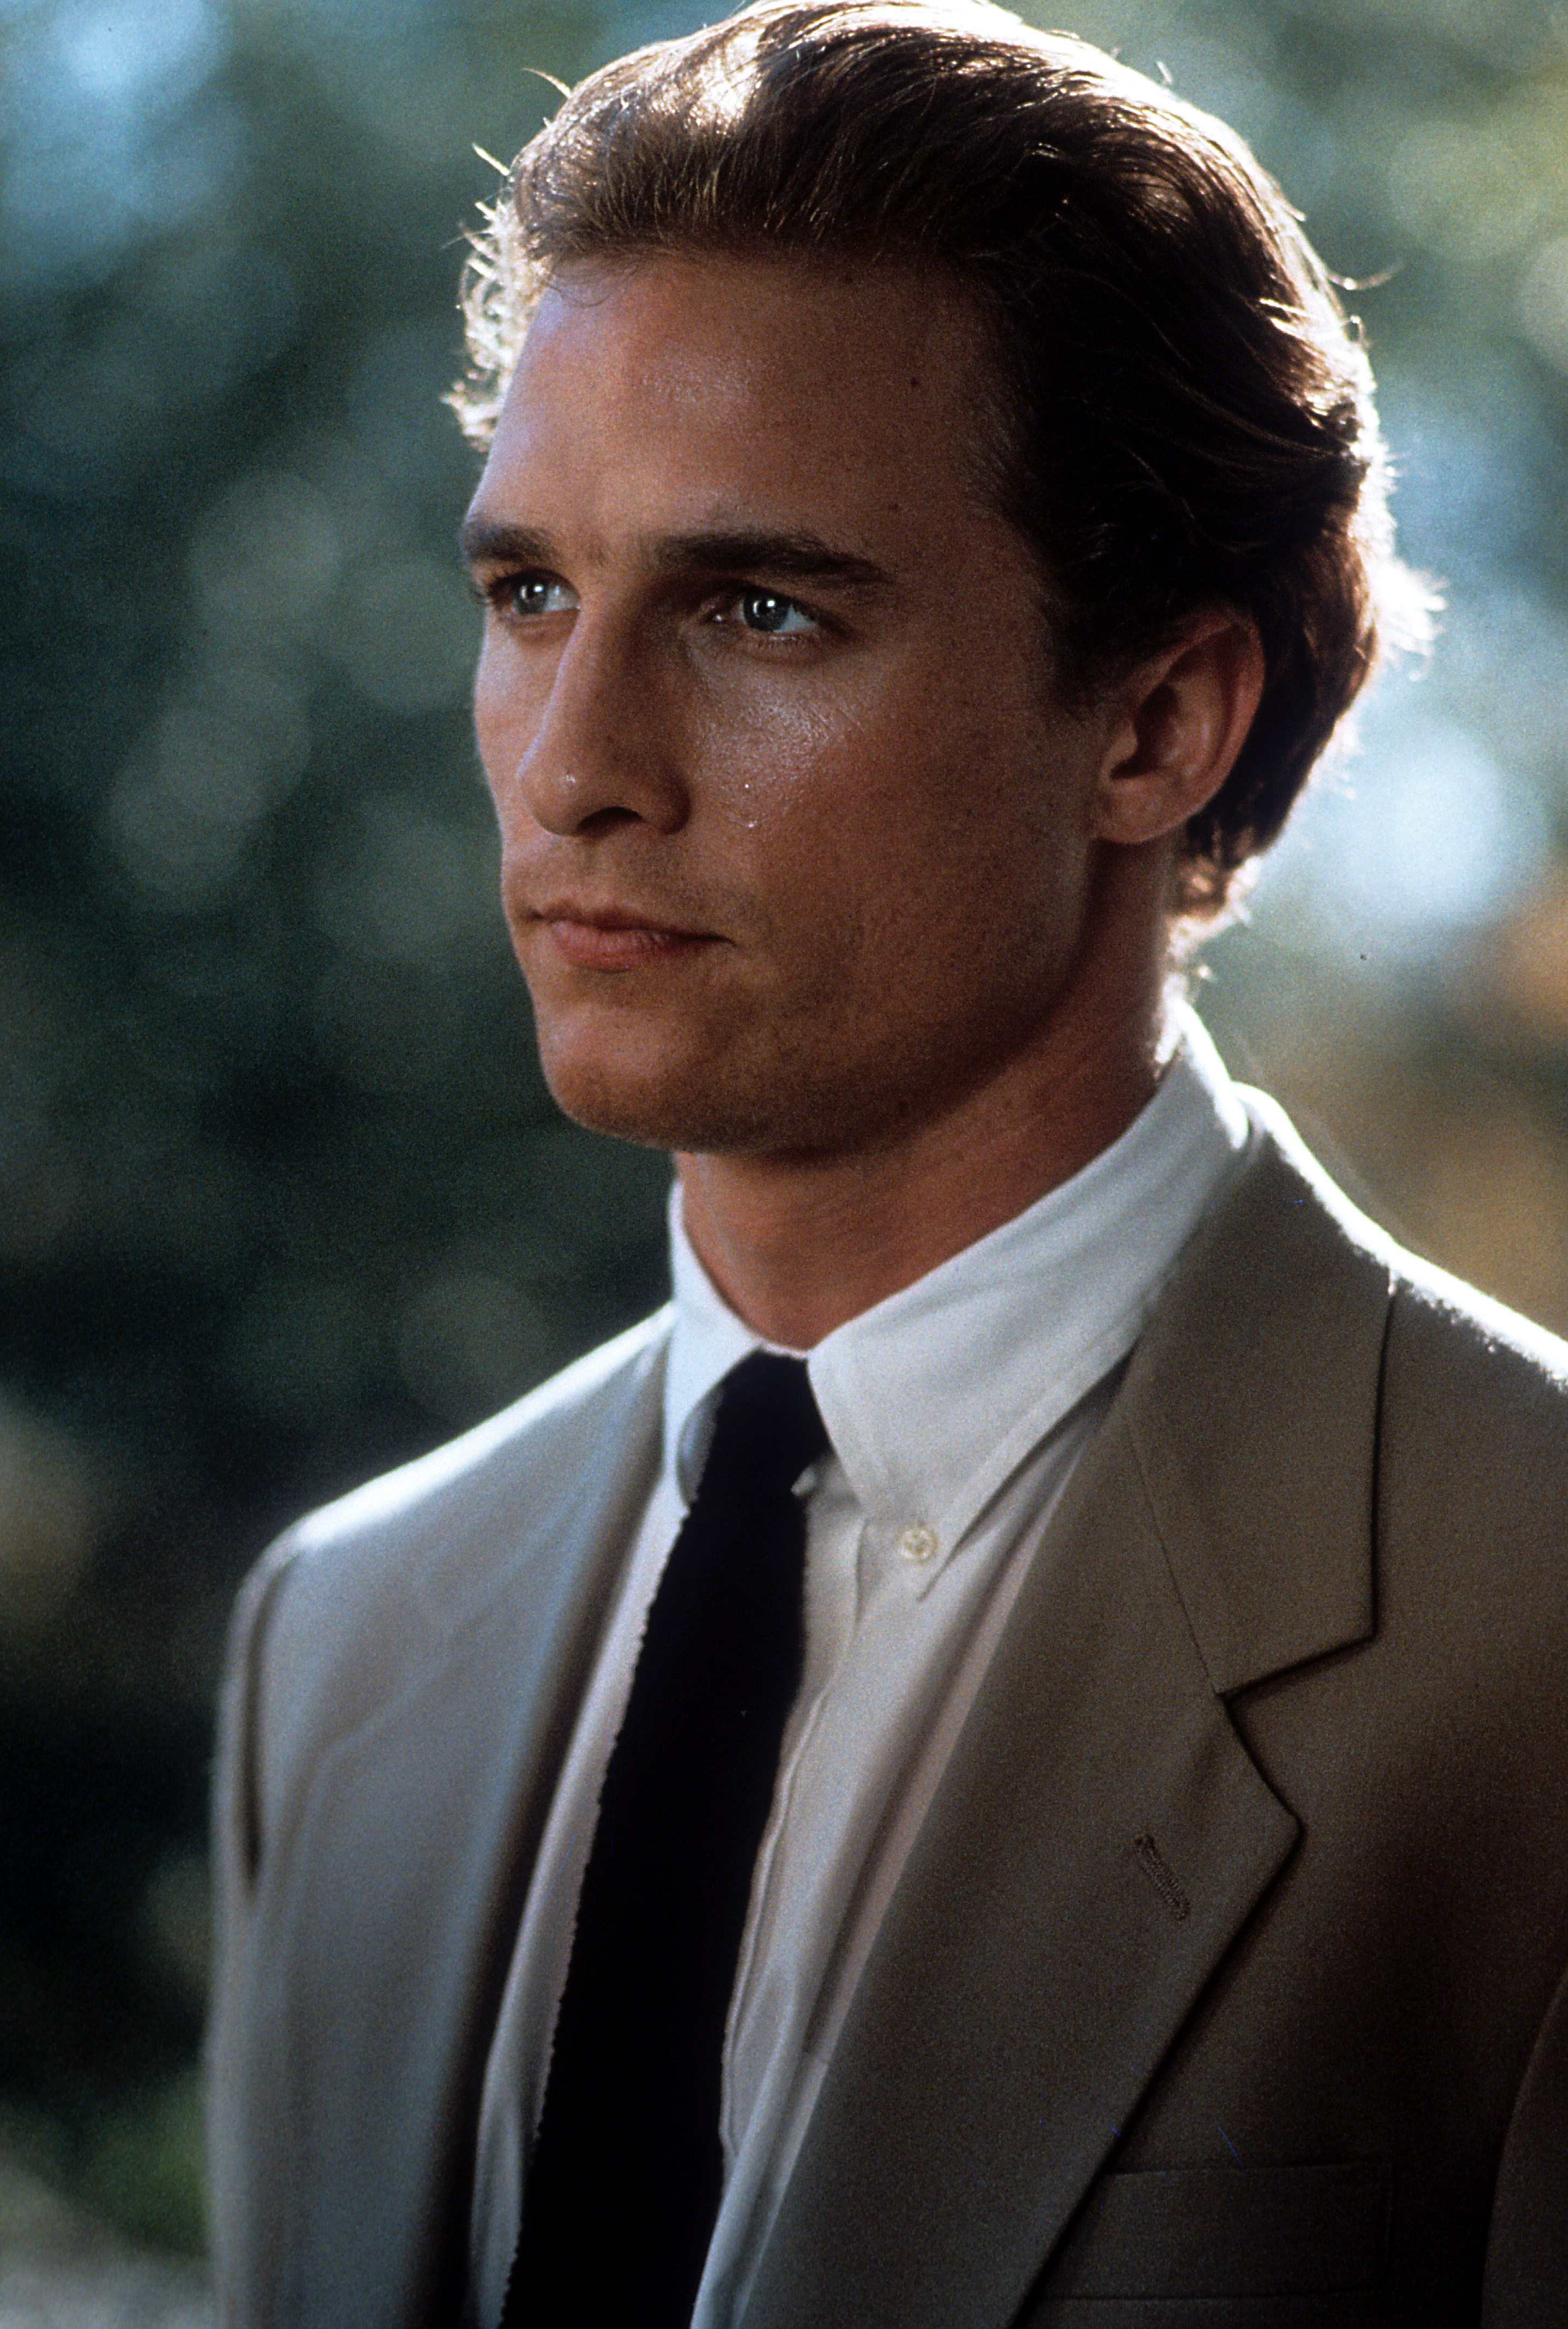 Ein amerikanischer Schauspieler in einer Szene aus dem Film "A Time To Kill" von 1996 | Quelle: Getty Images